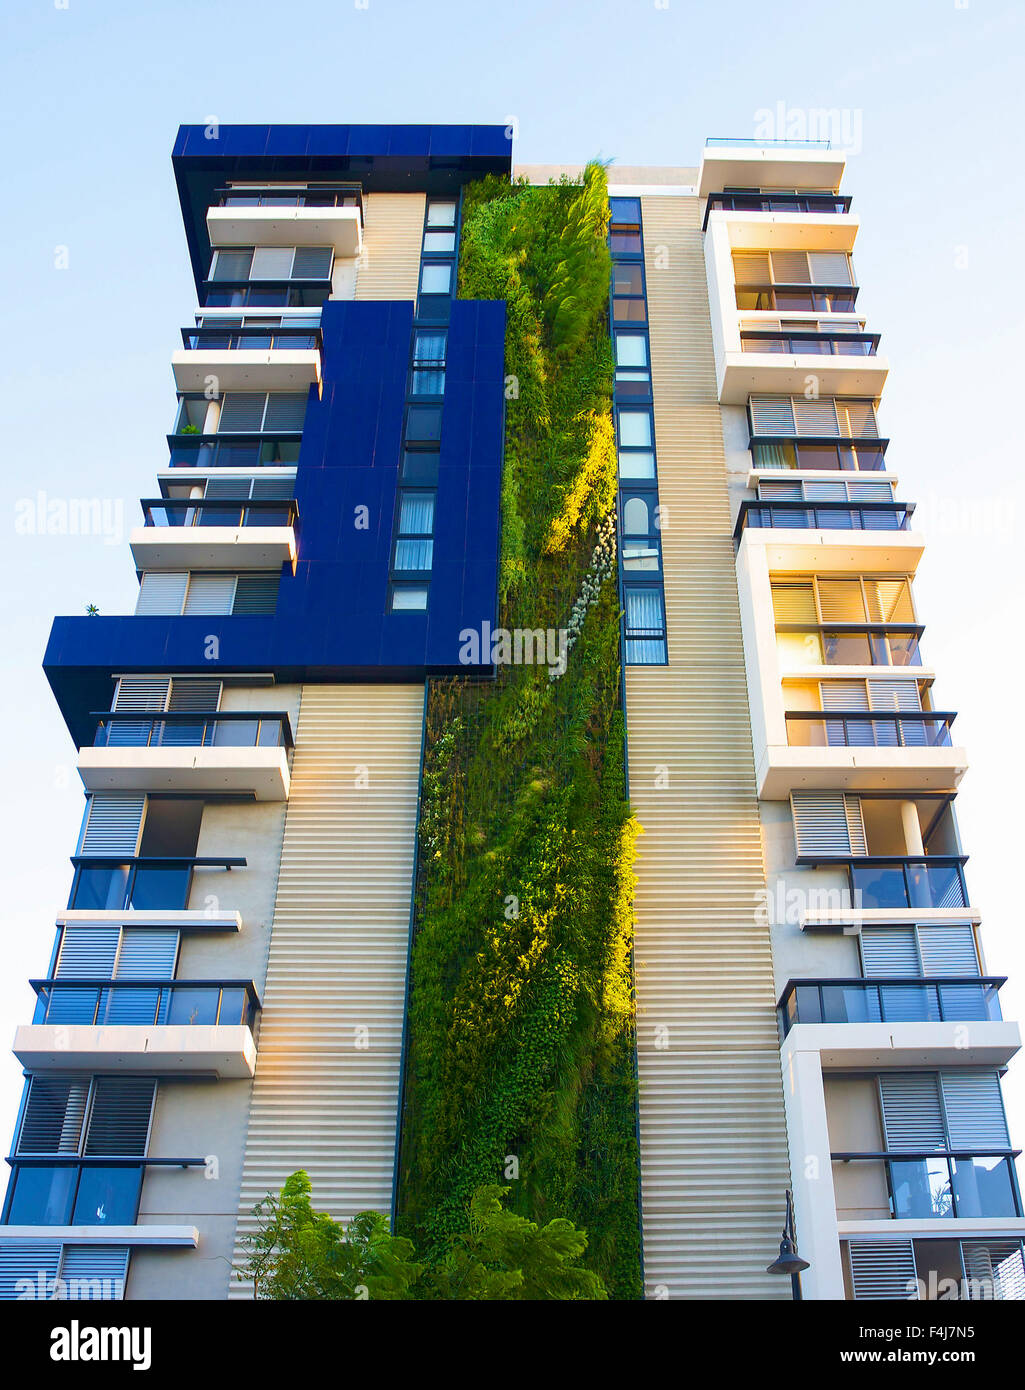 Eine französische Botaniker Patrick Blanc hat seine höchste vertikale Garten in einer Wohnanlage in Sydney angelegt. Stockfoto